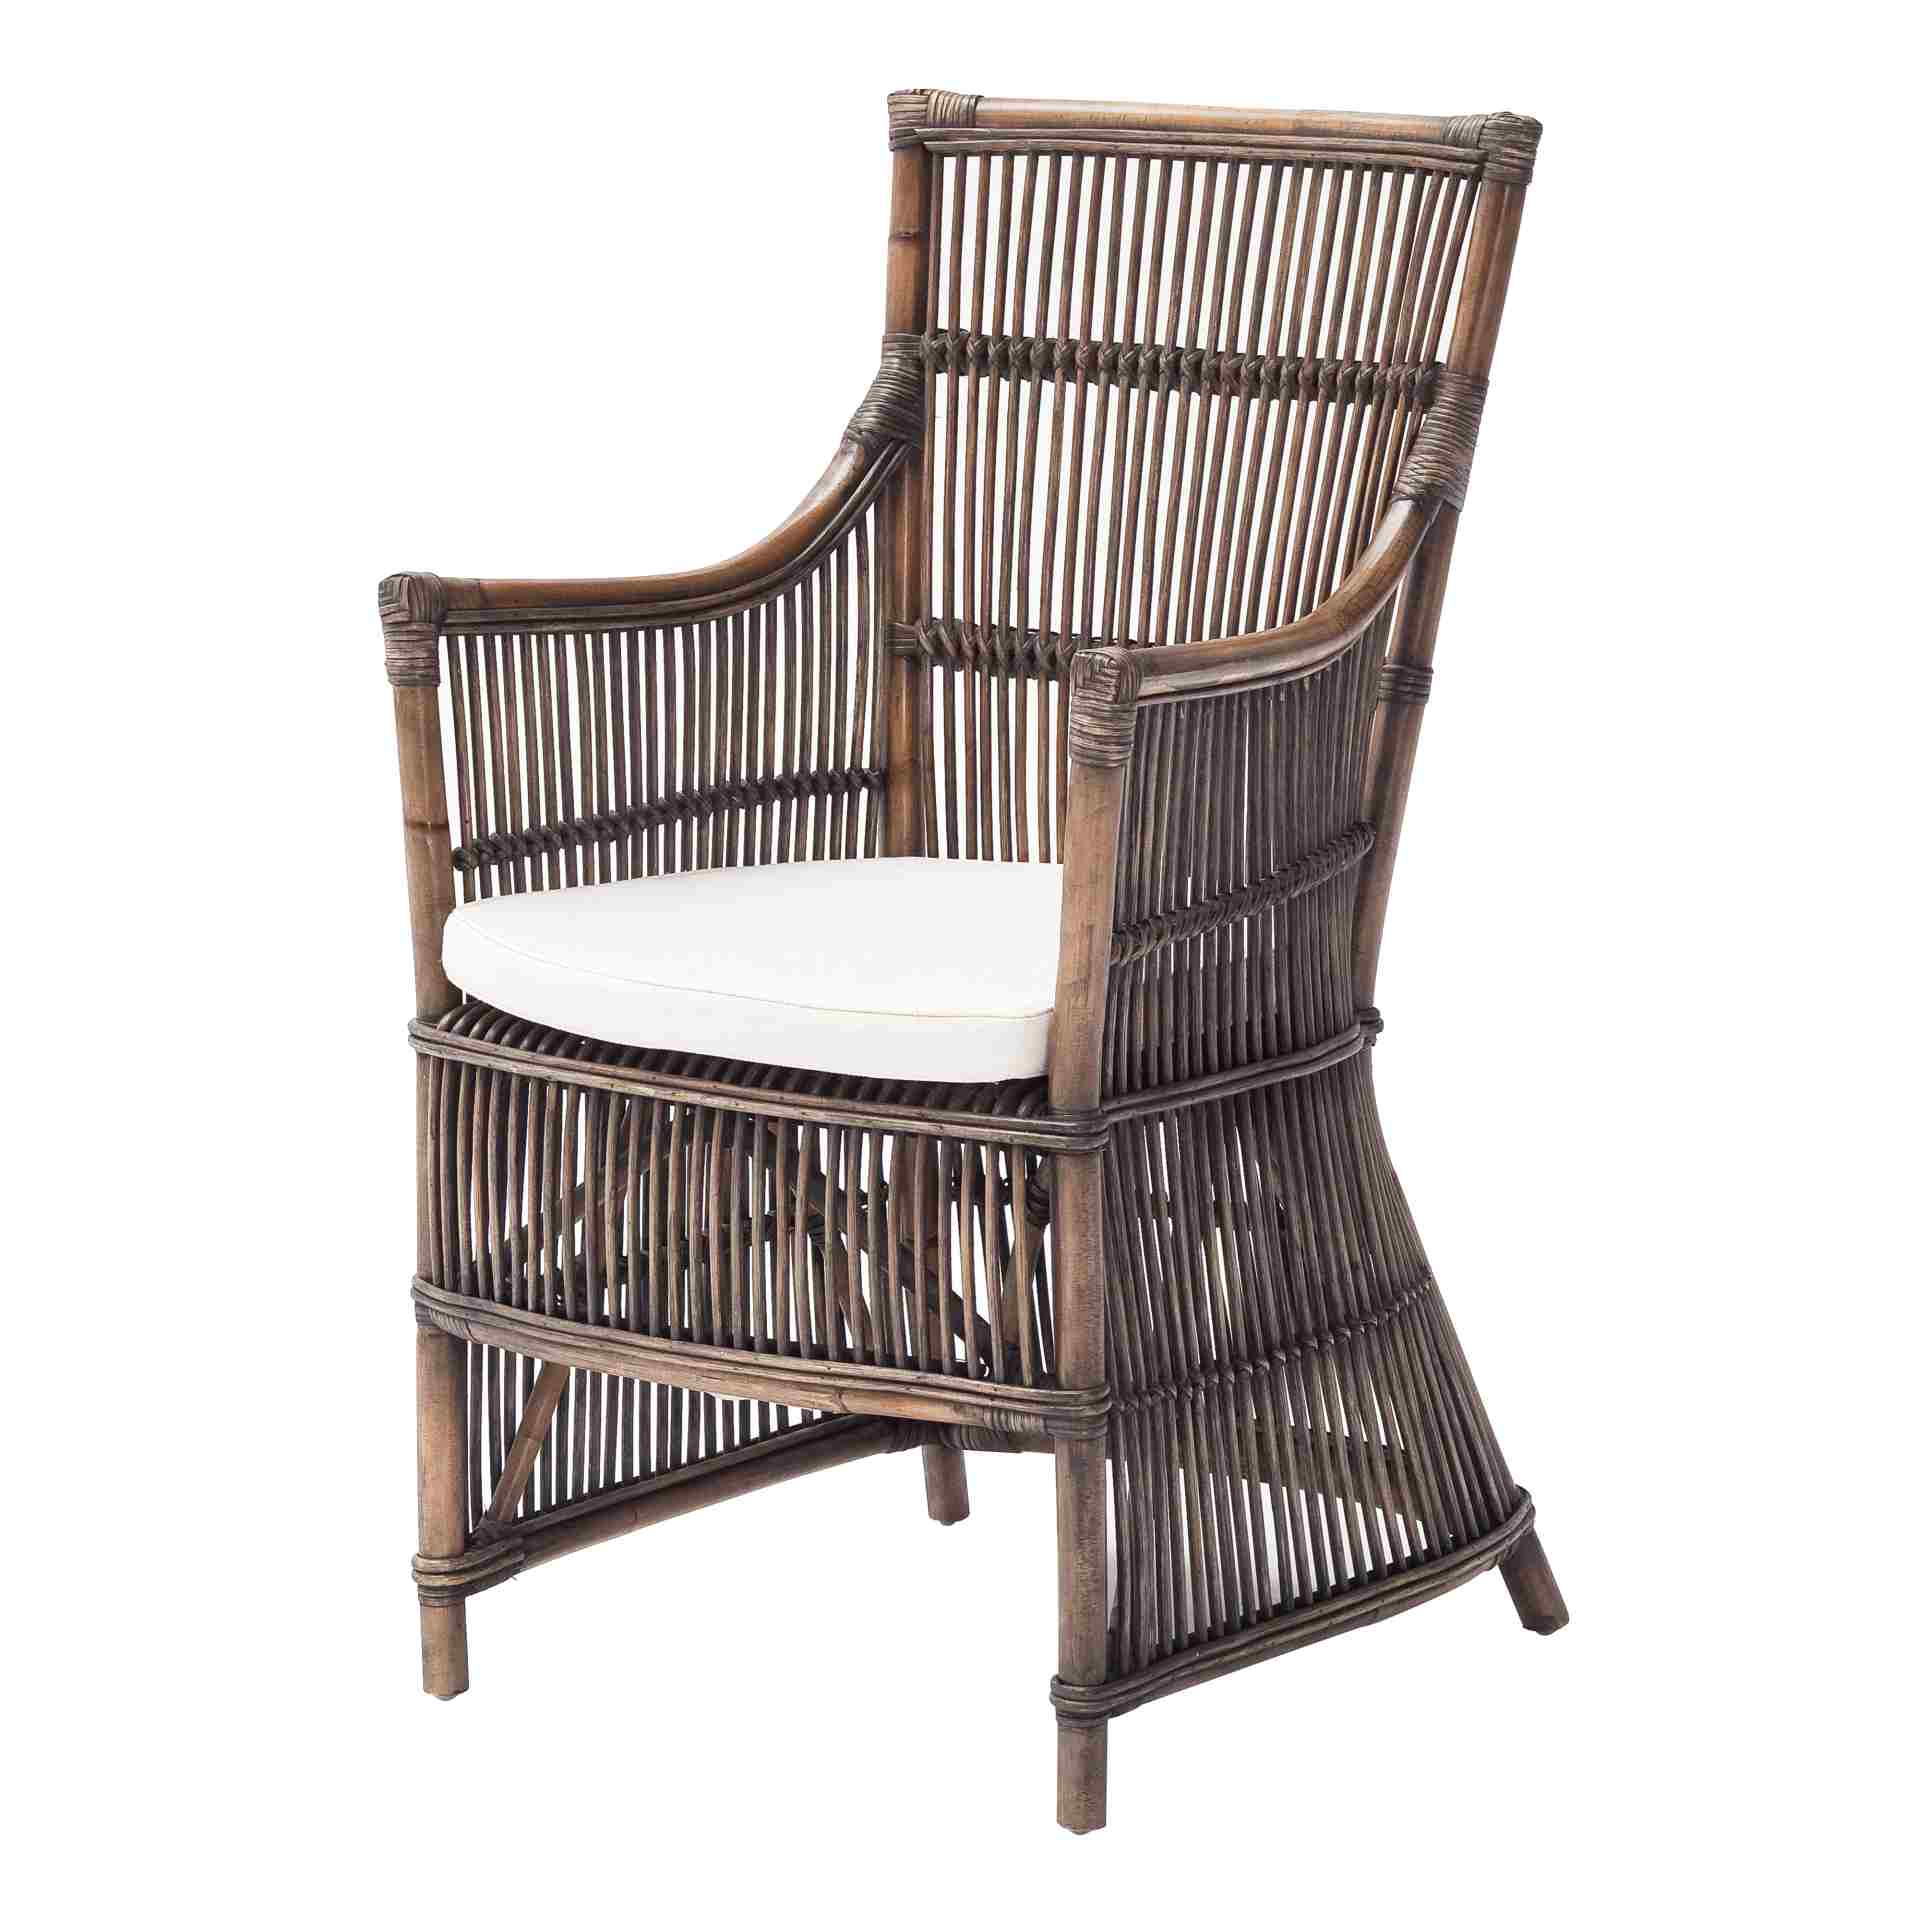 Der Armlehnstuhl Duchess überzeugt mit seinem Landhaus Stil. Gefertigt wurde er aus Rattan, welches einen braunen Farbton besitzt. Der Stuhl verfügt über eine Armlehne und ist im 2er-Set erhältlich. Die Sitzhöhe beträgt beträgt 47 cm.